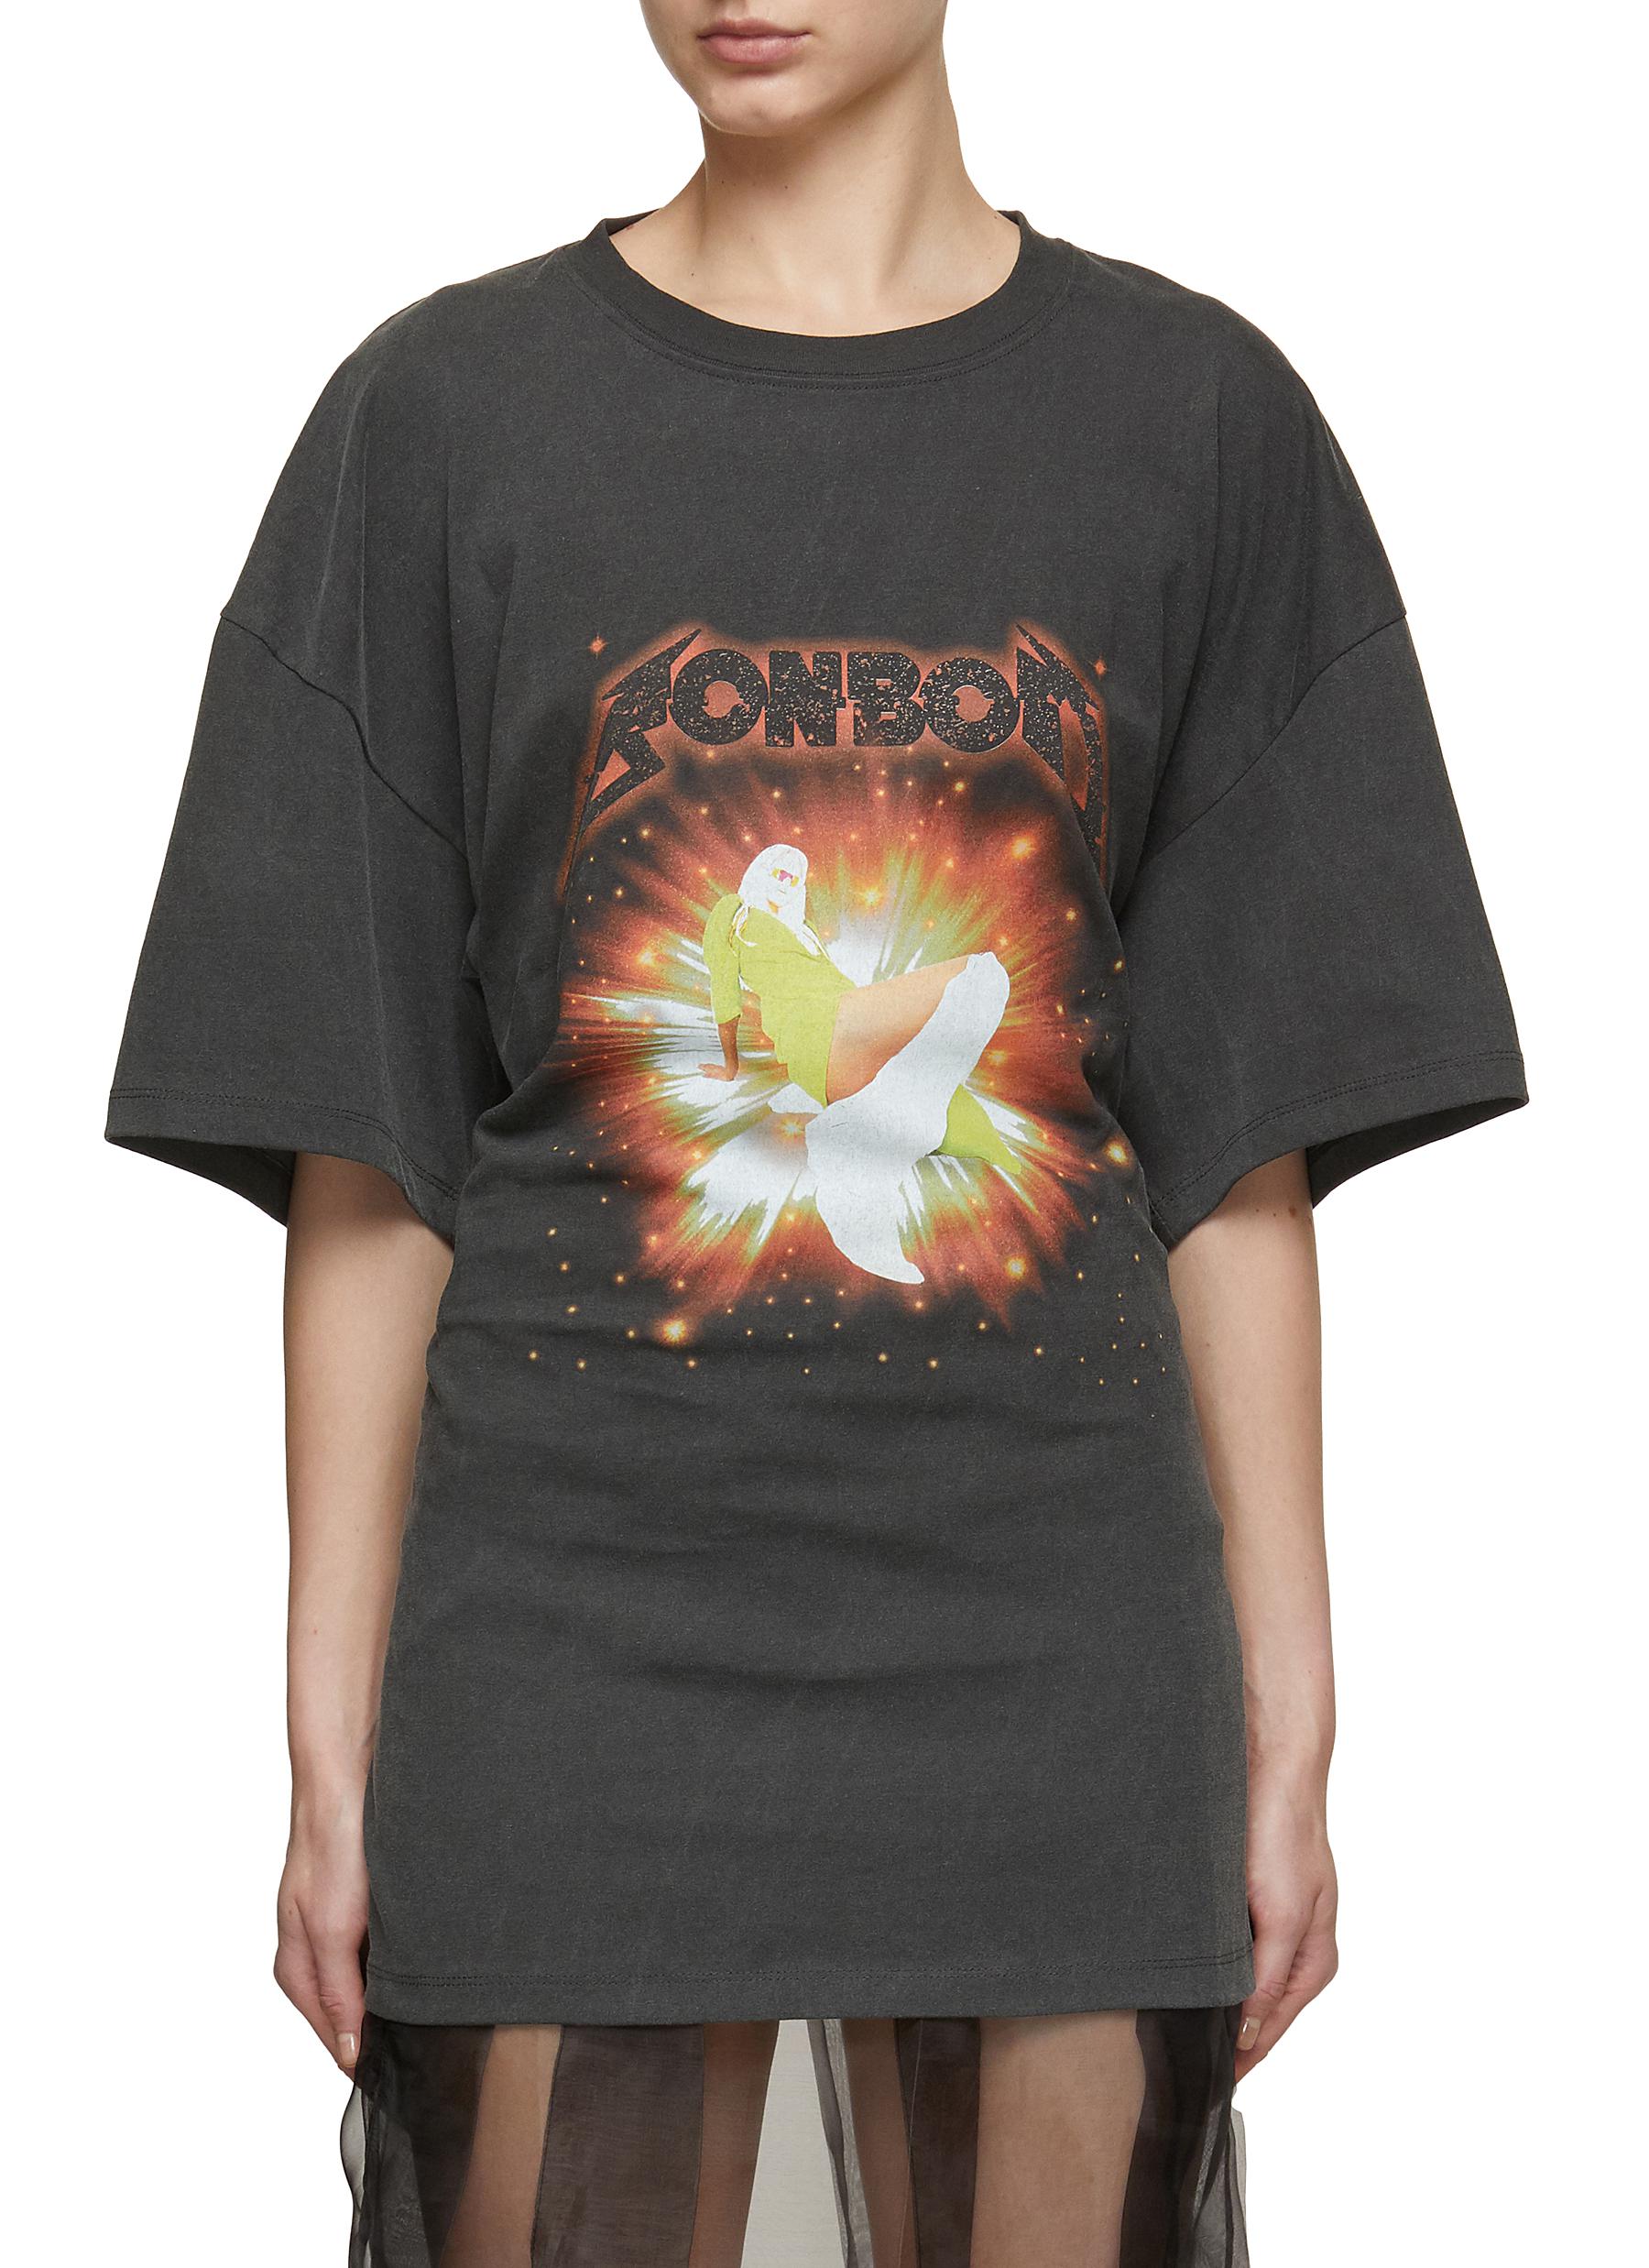 BONBOM | Back Grab Graphic Cotton T-Shirt | Women | Lane Crawford